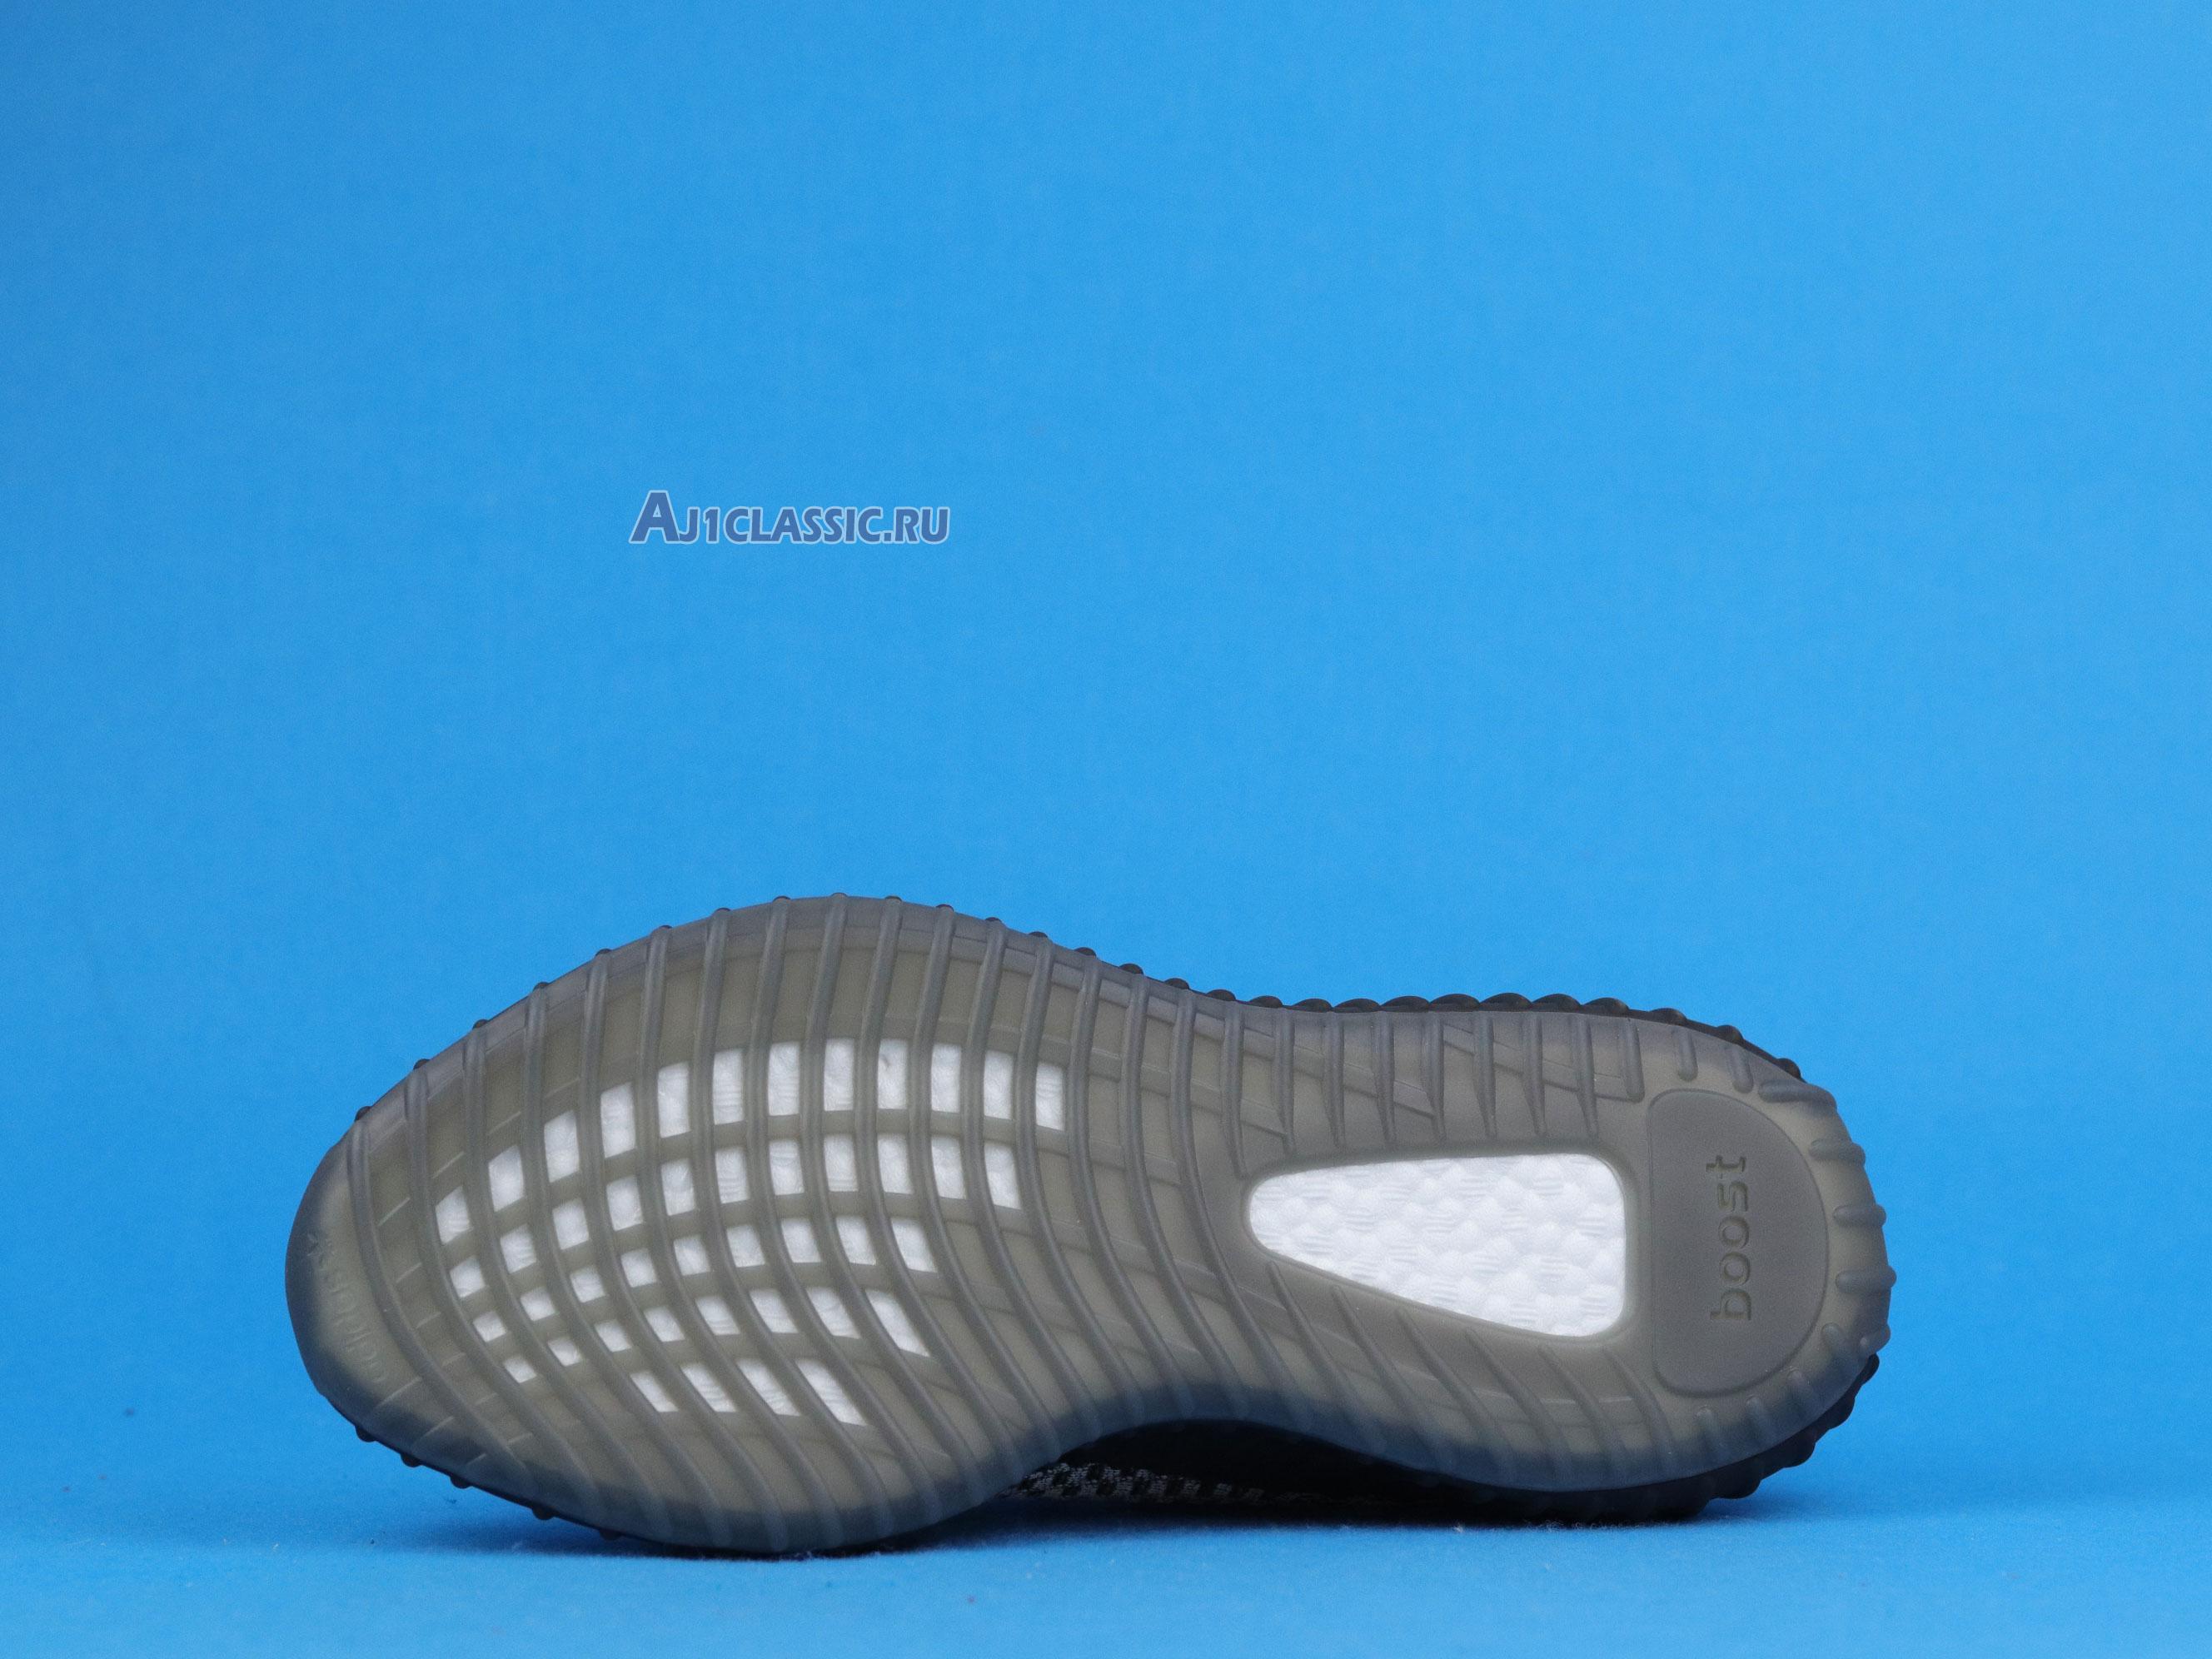 Adidas Yeezy Boost 350 V2 "Ash Stone" GW0089